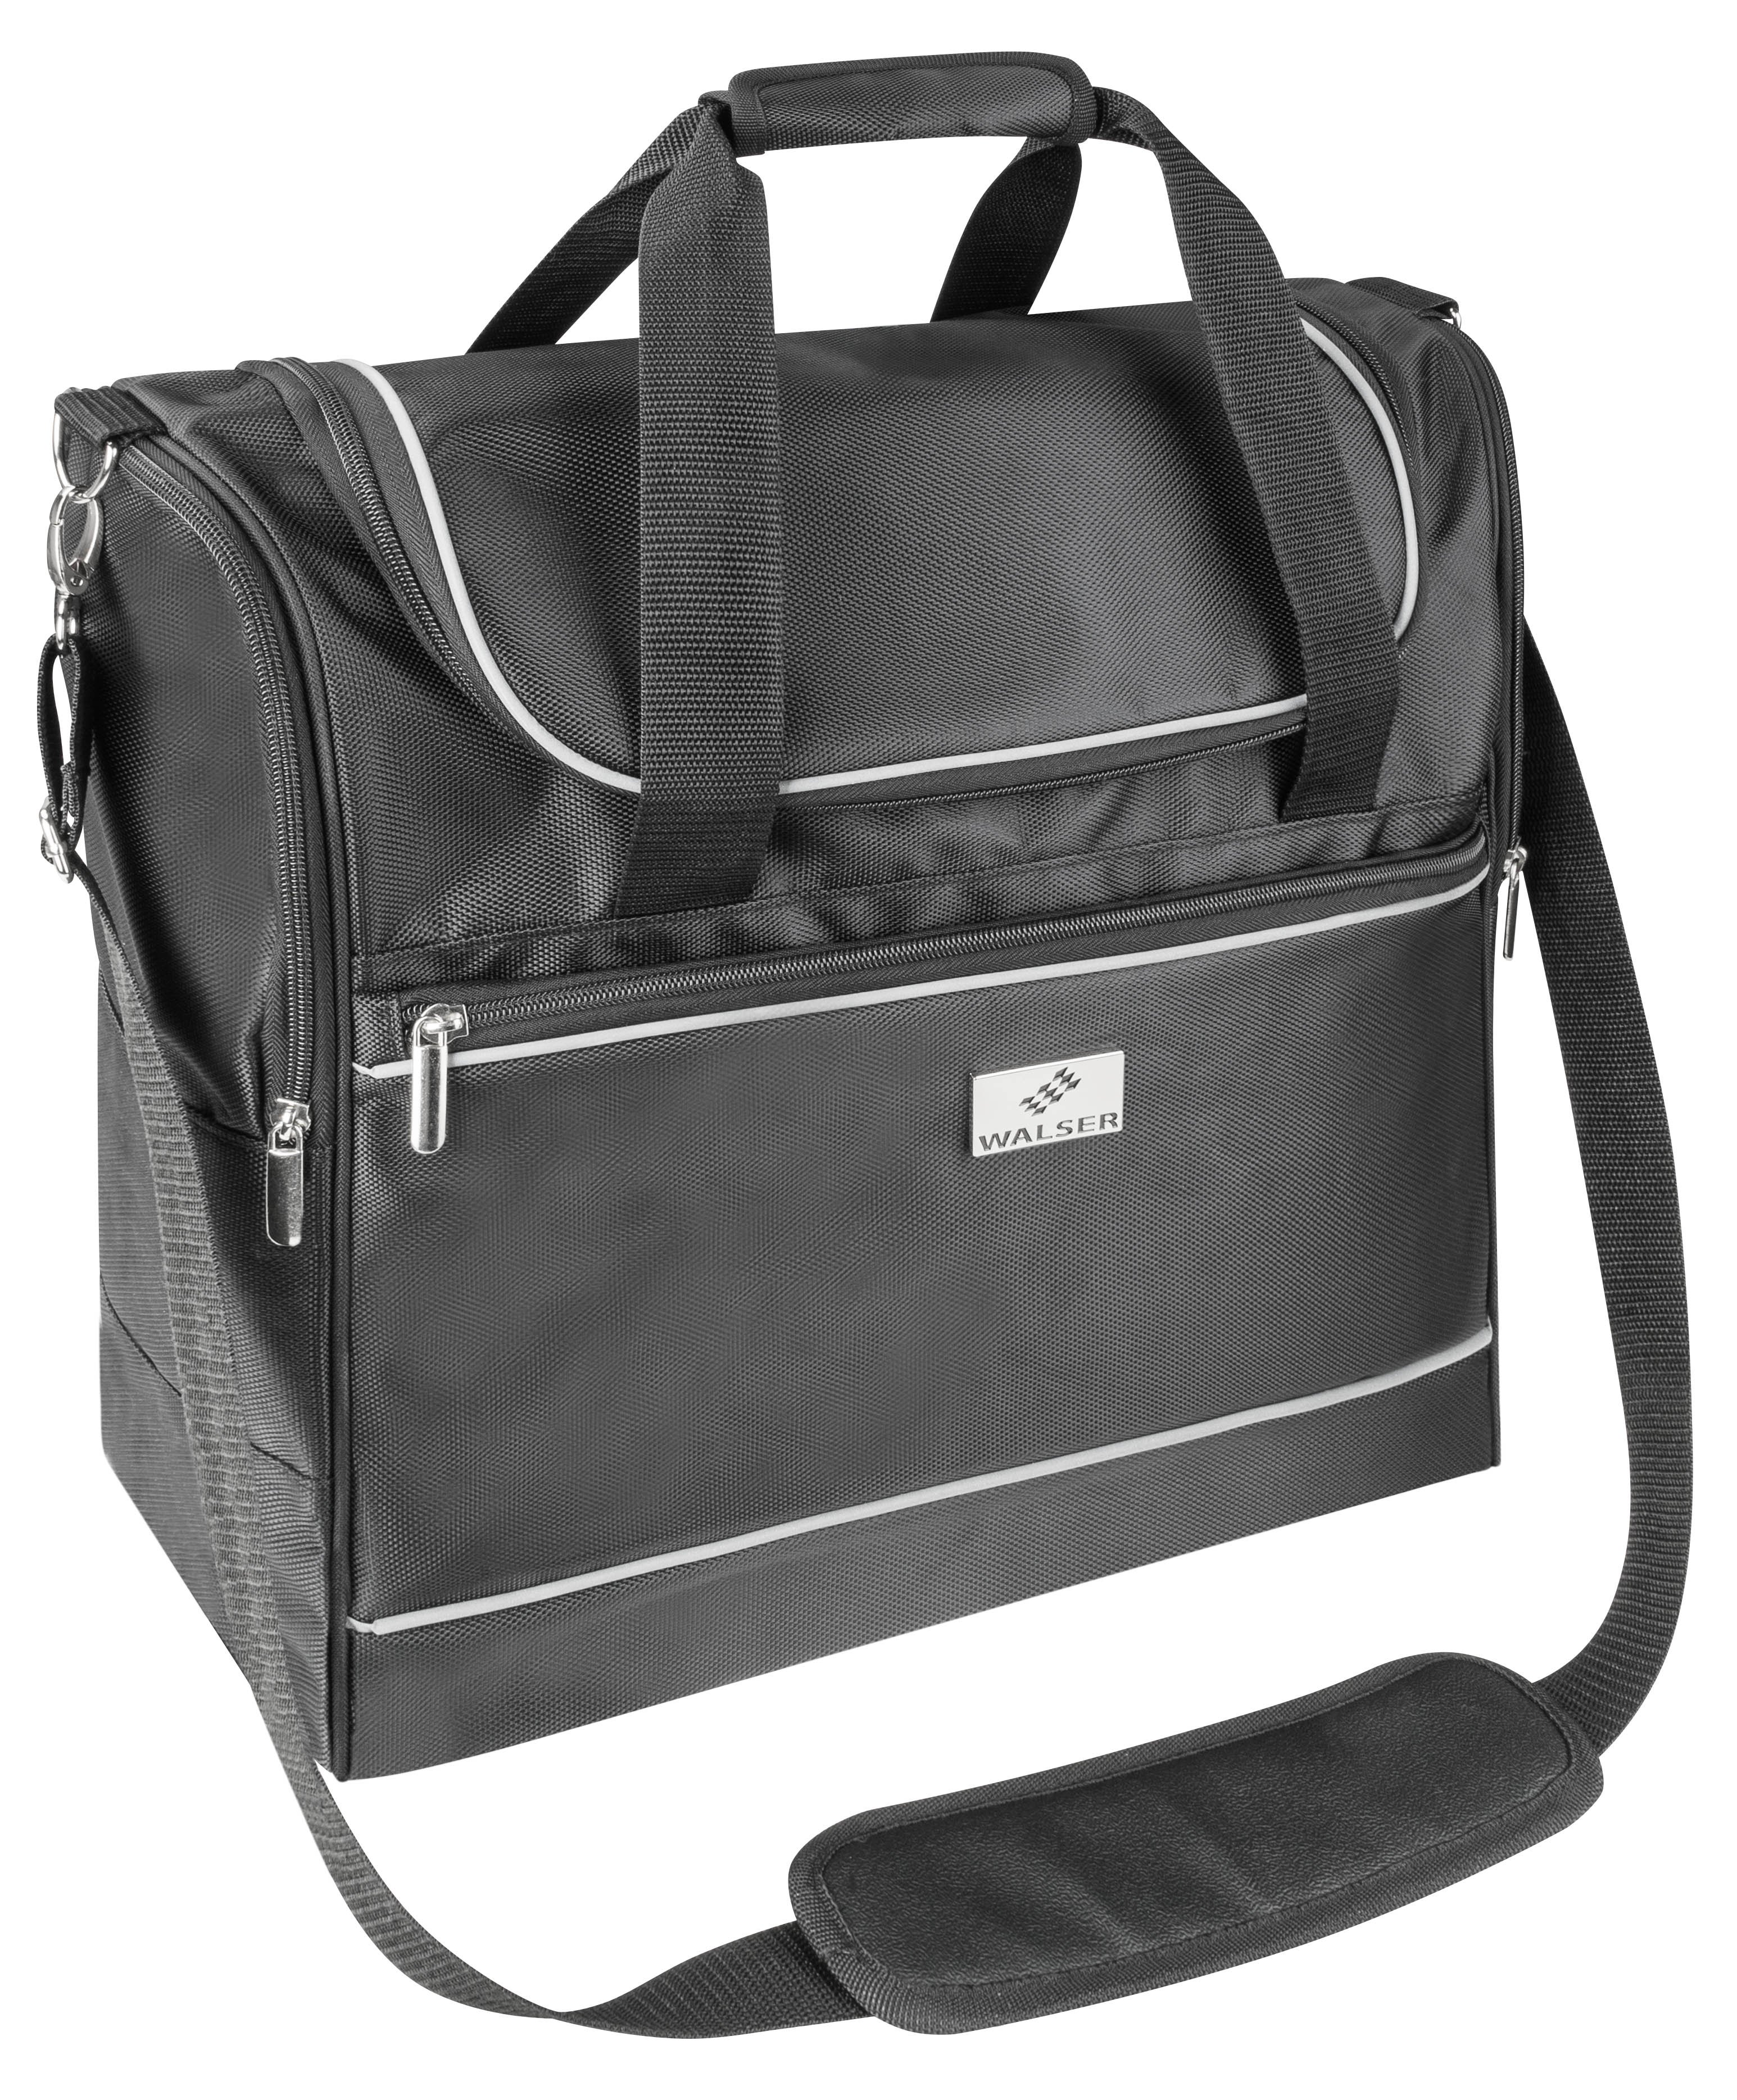 Carbags travel bag 45x20x40cm black